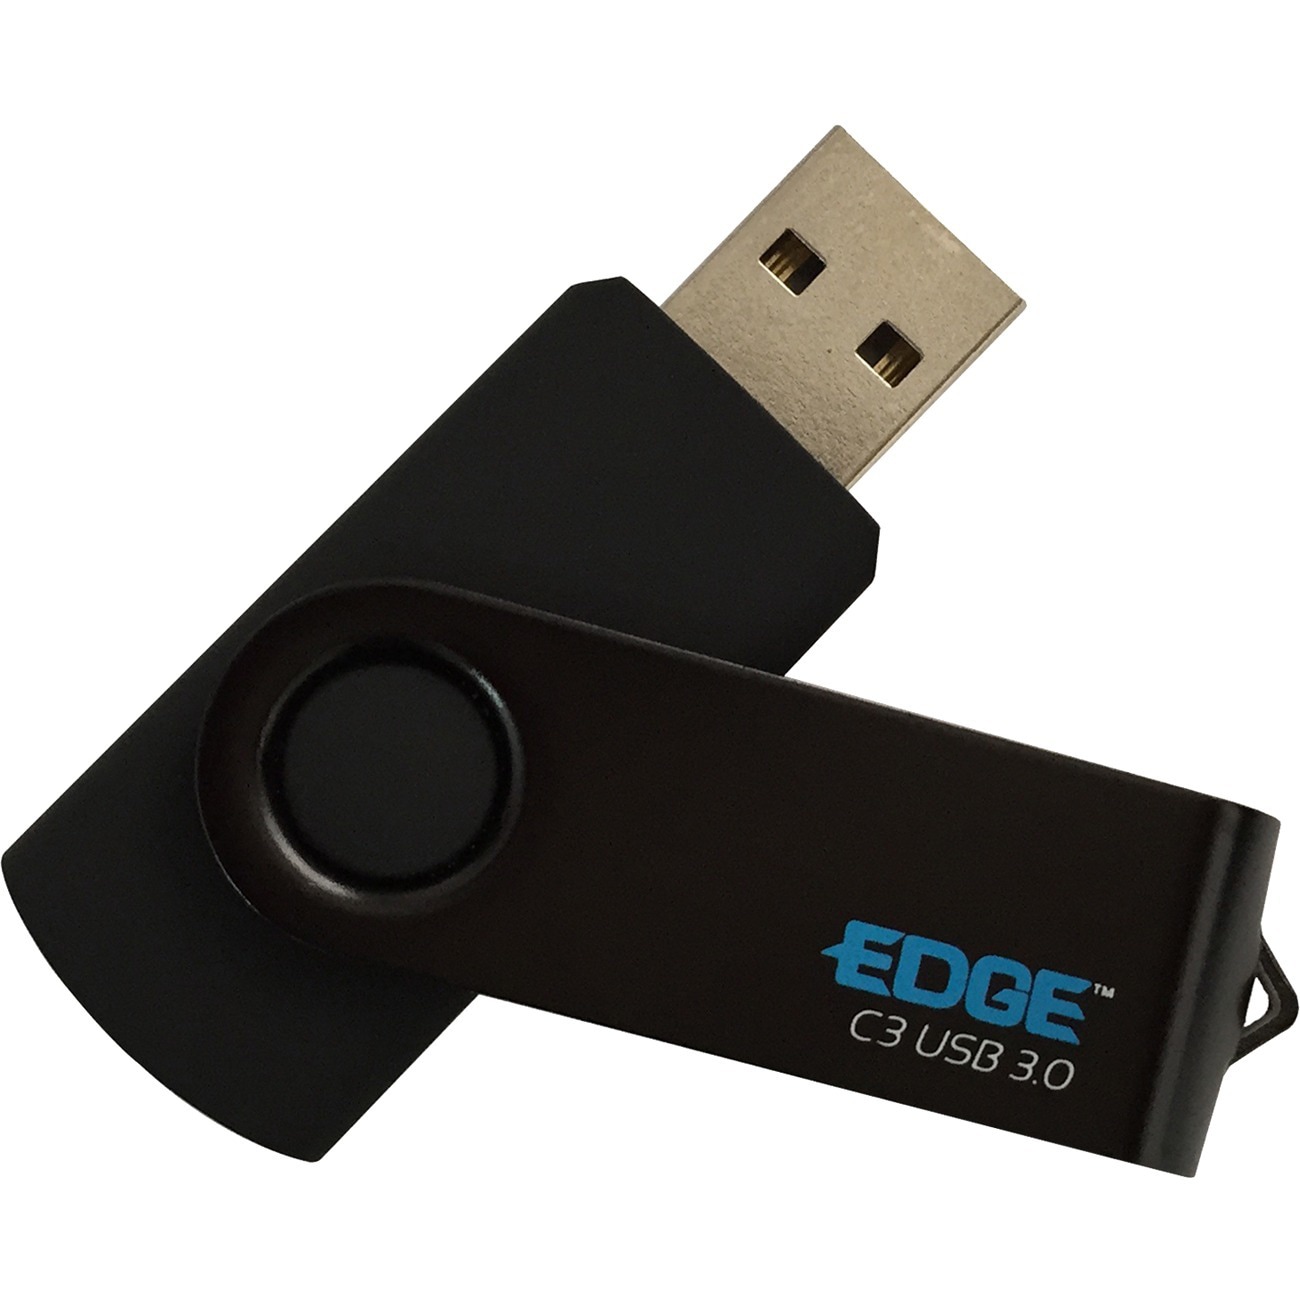 EDGE C3 - USB flash drive - 64 - PE246976 - USB Flash Drives - CDW.com